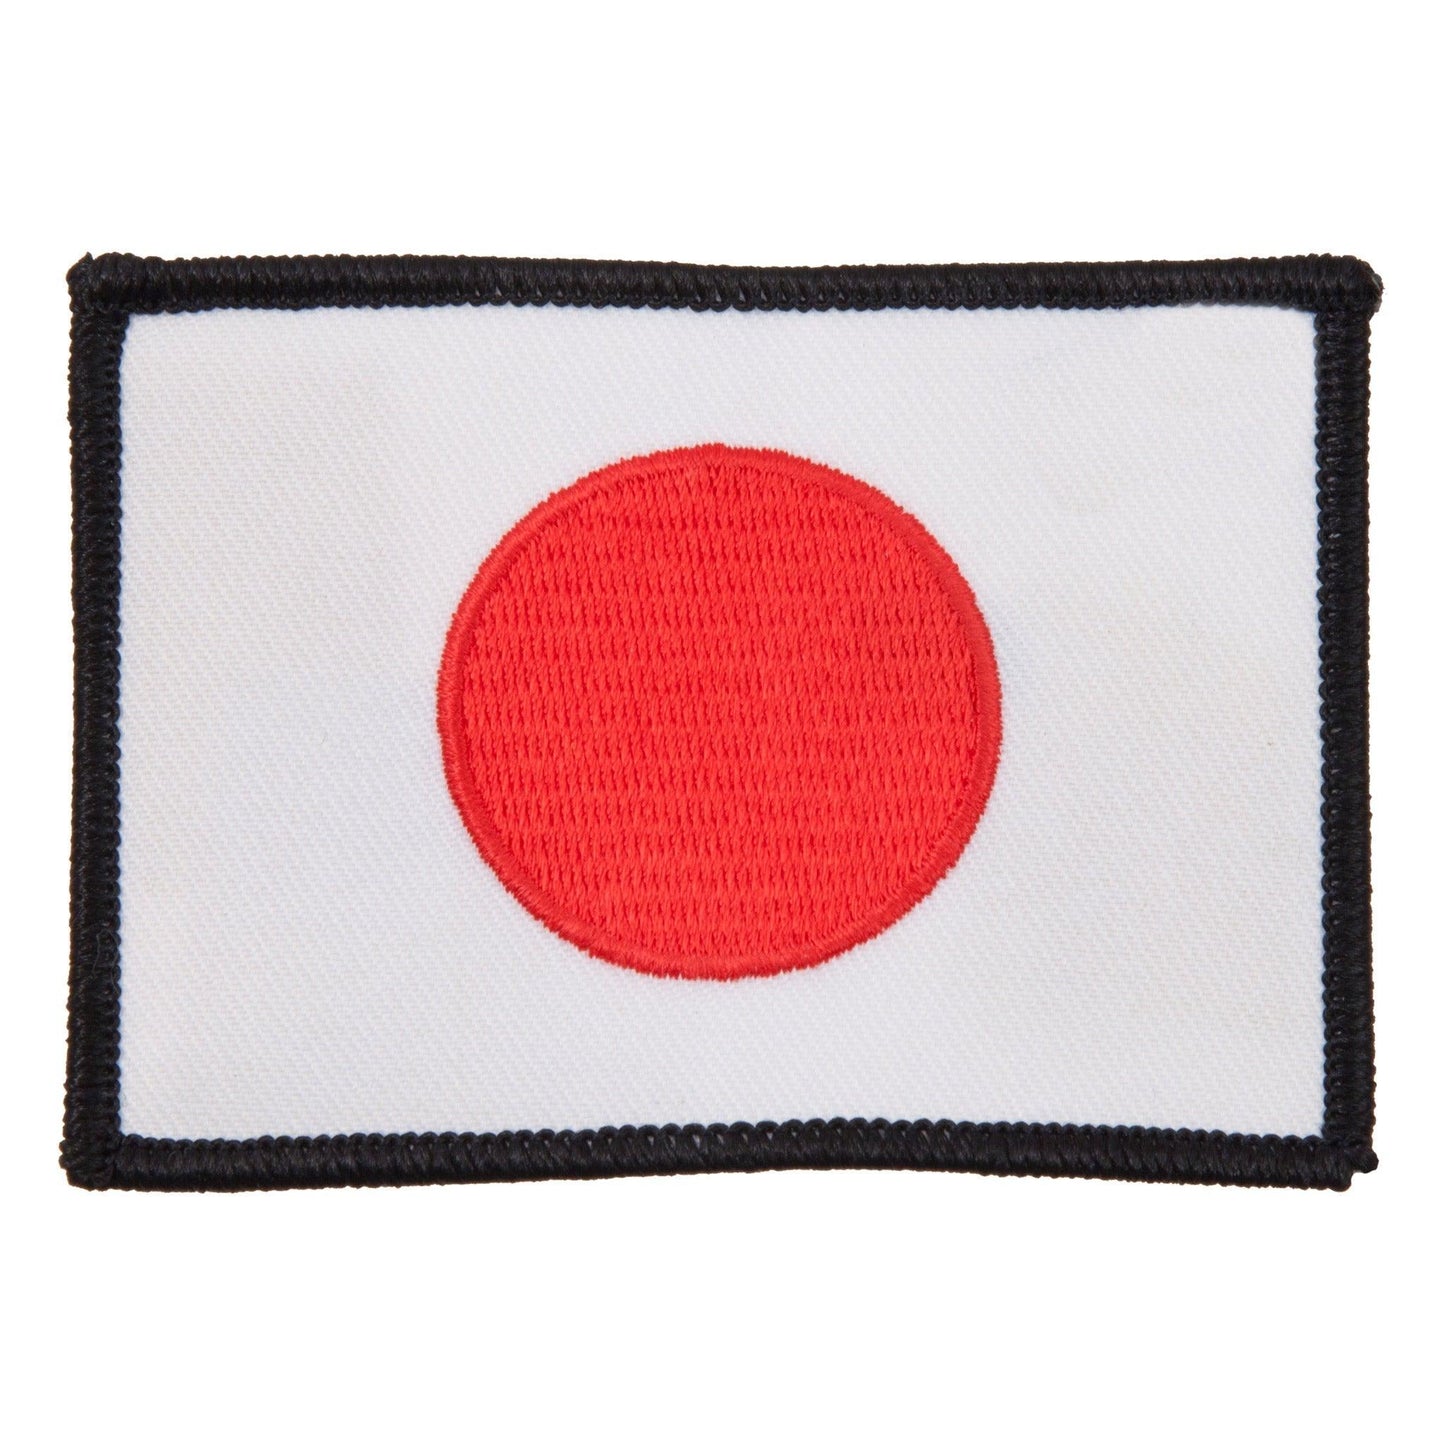 Japan Flag Patch - Violent Art Shop